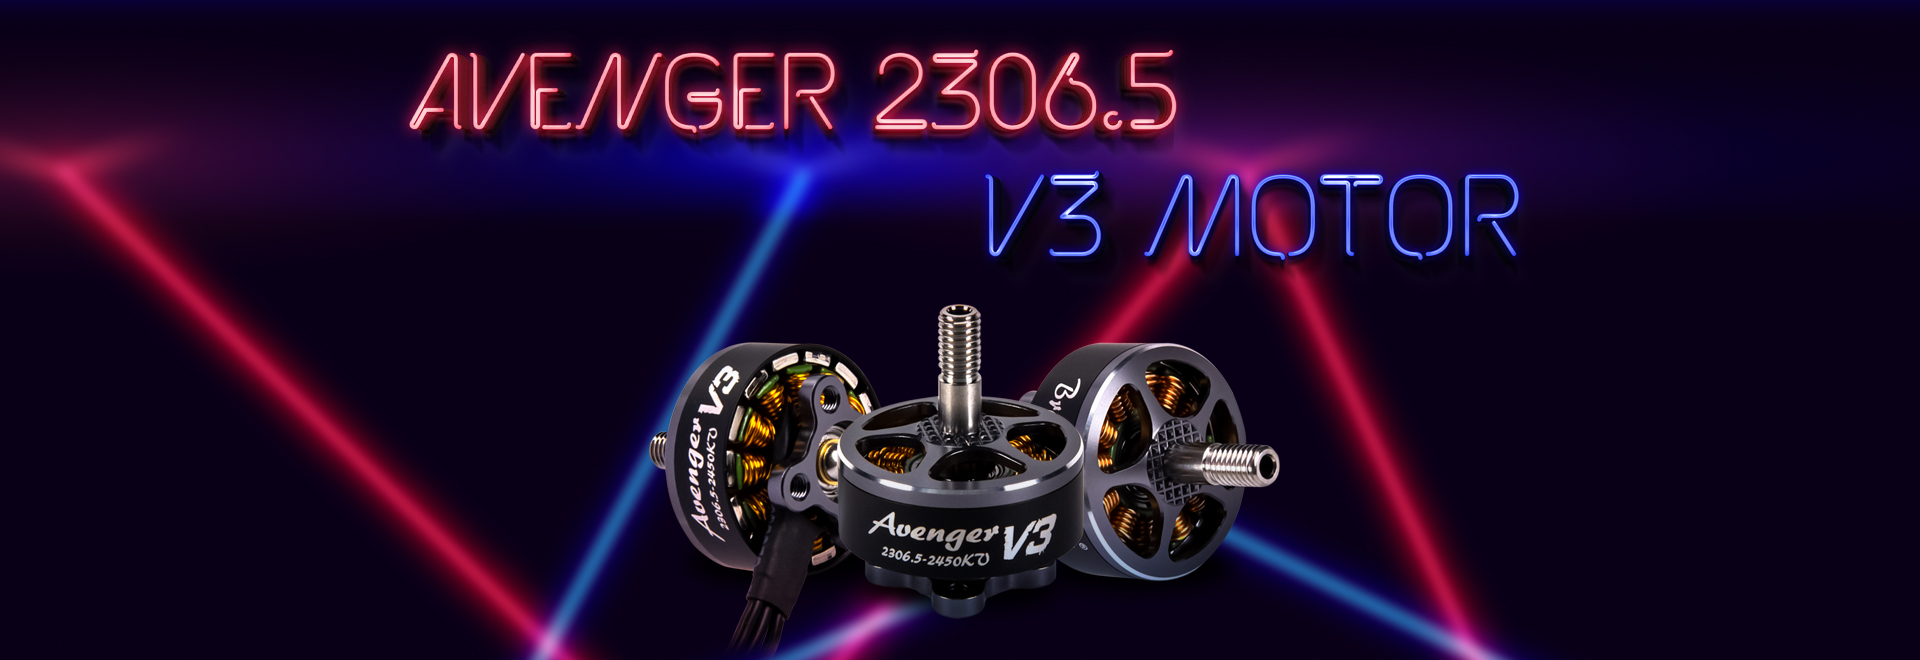 Avenger 2306.5 V3 Motor